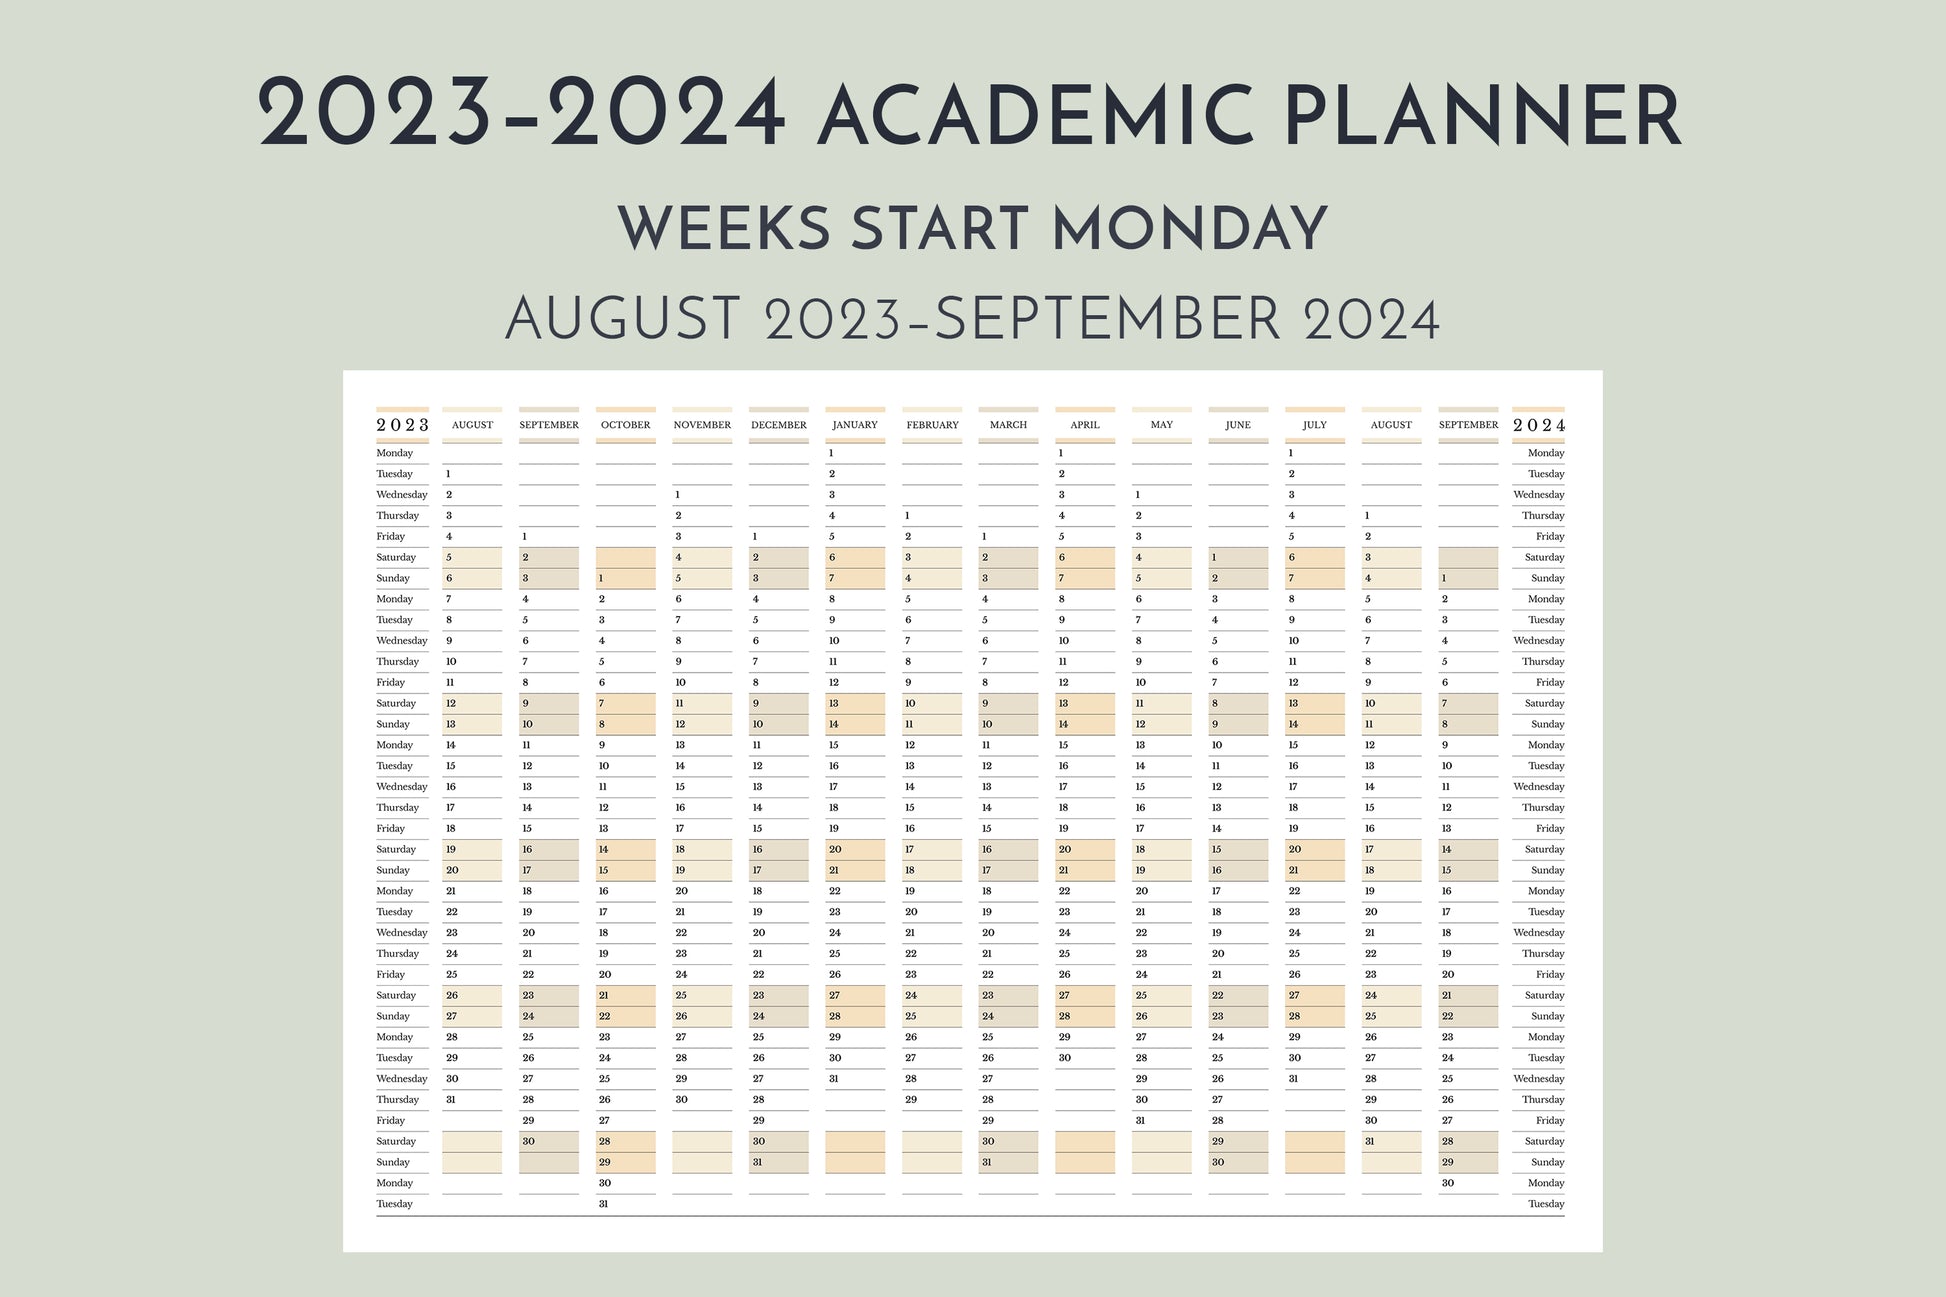 2023-2024 Academic Planner, weeks start Monday, in landscape orientation